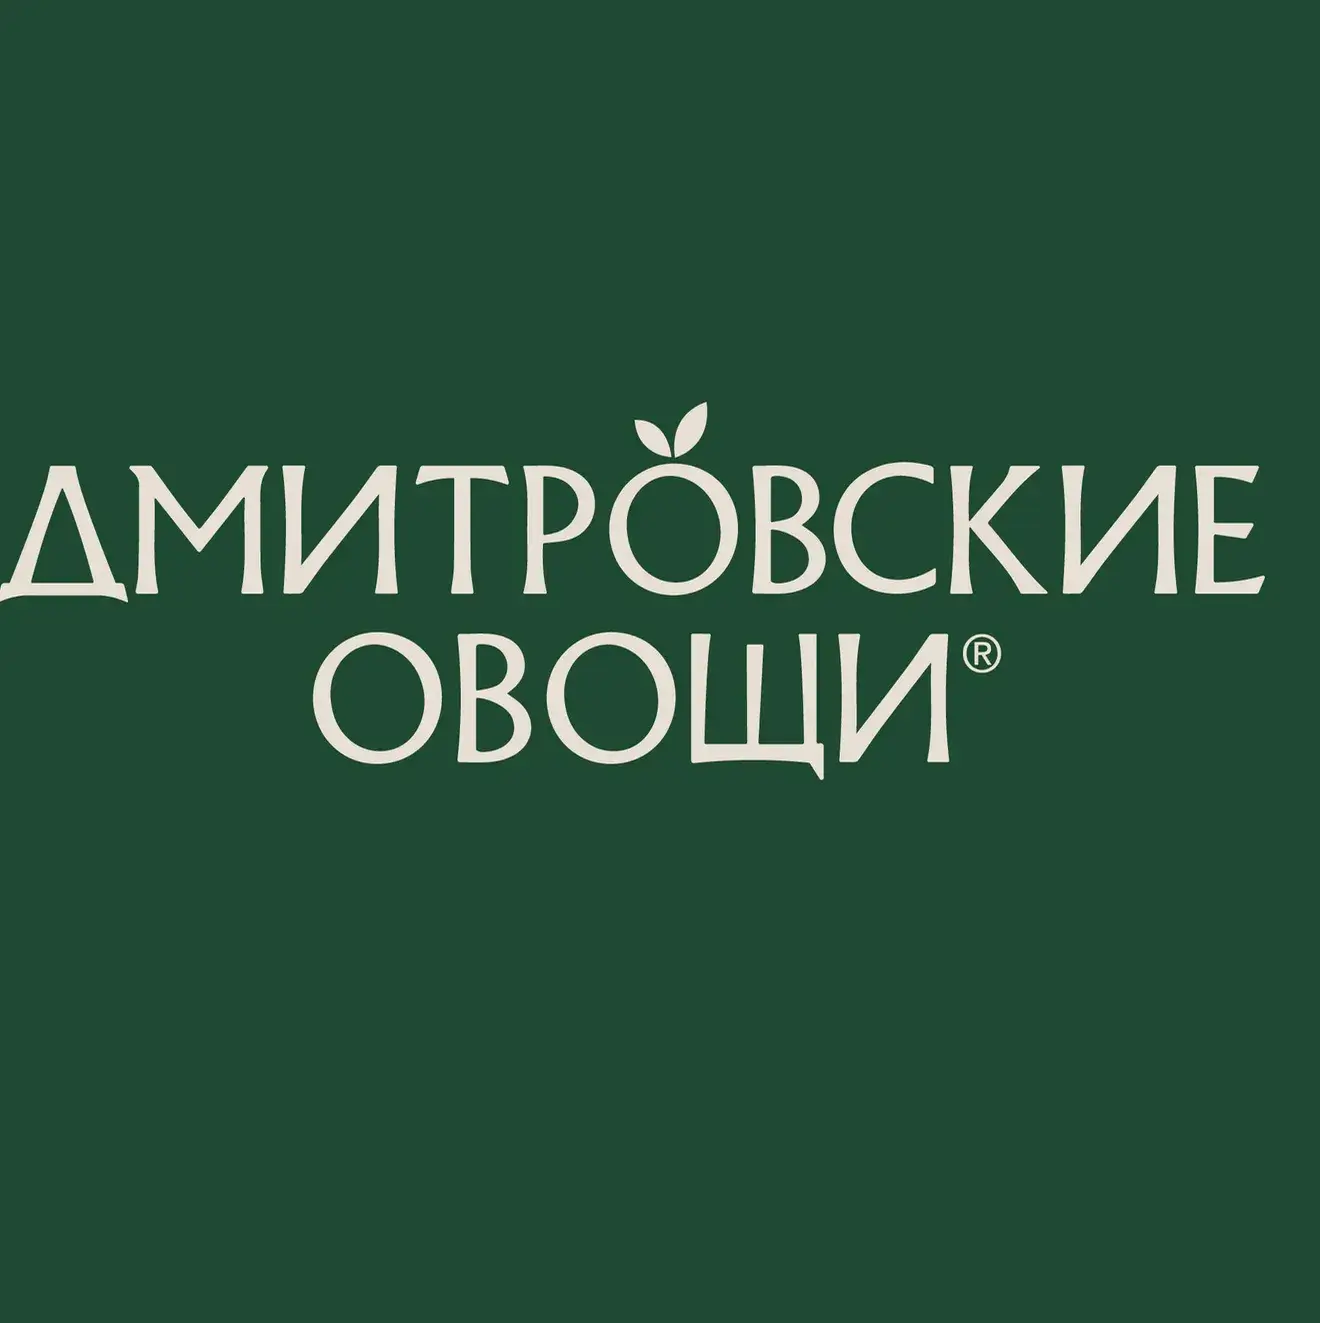 Dmitrovskie-ovoshi